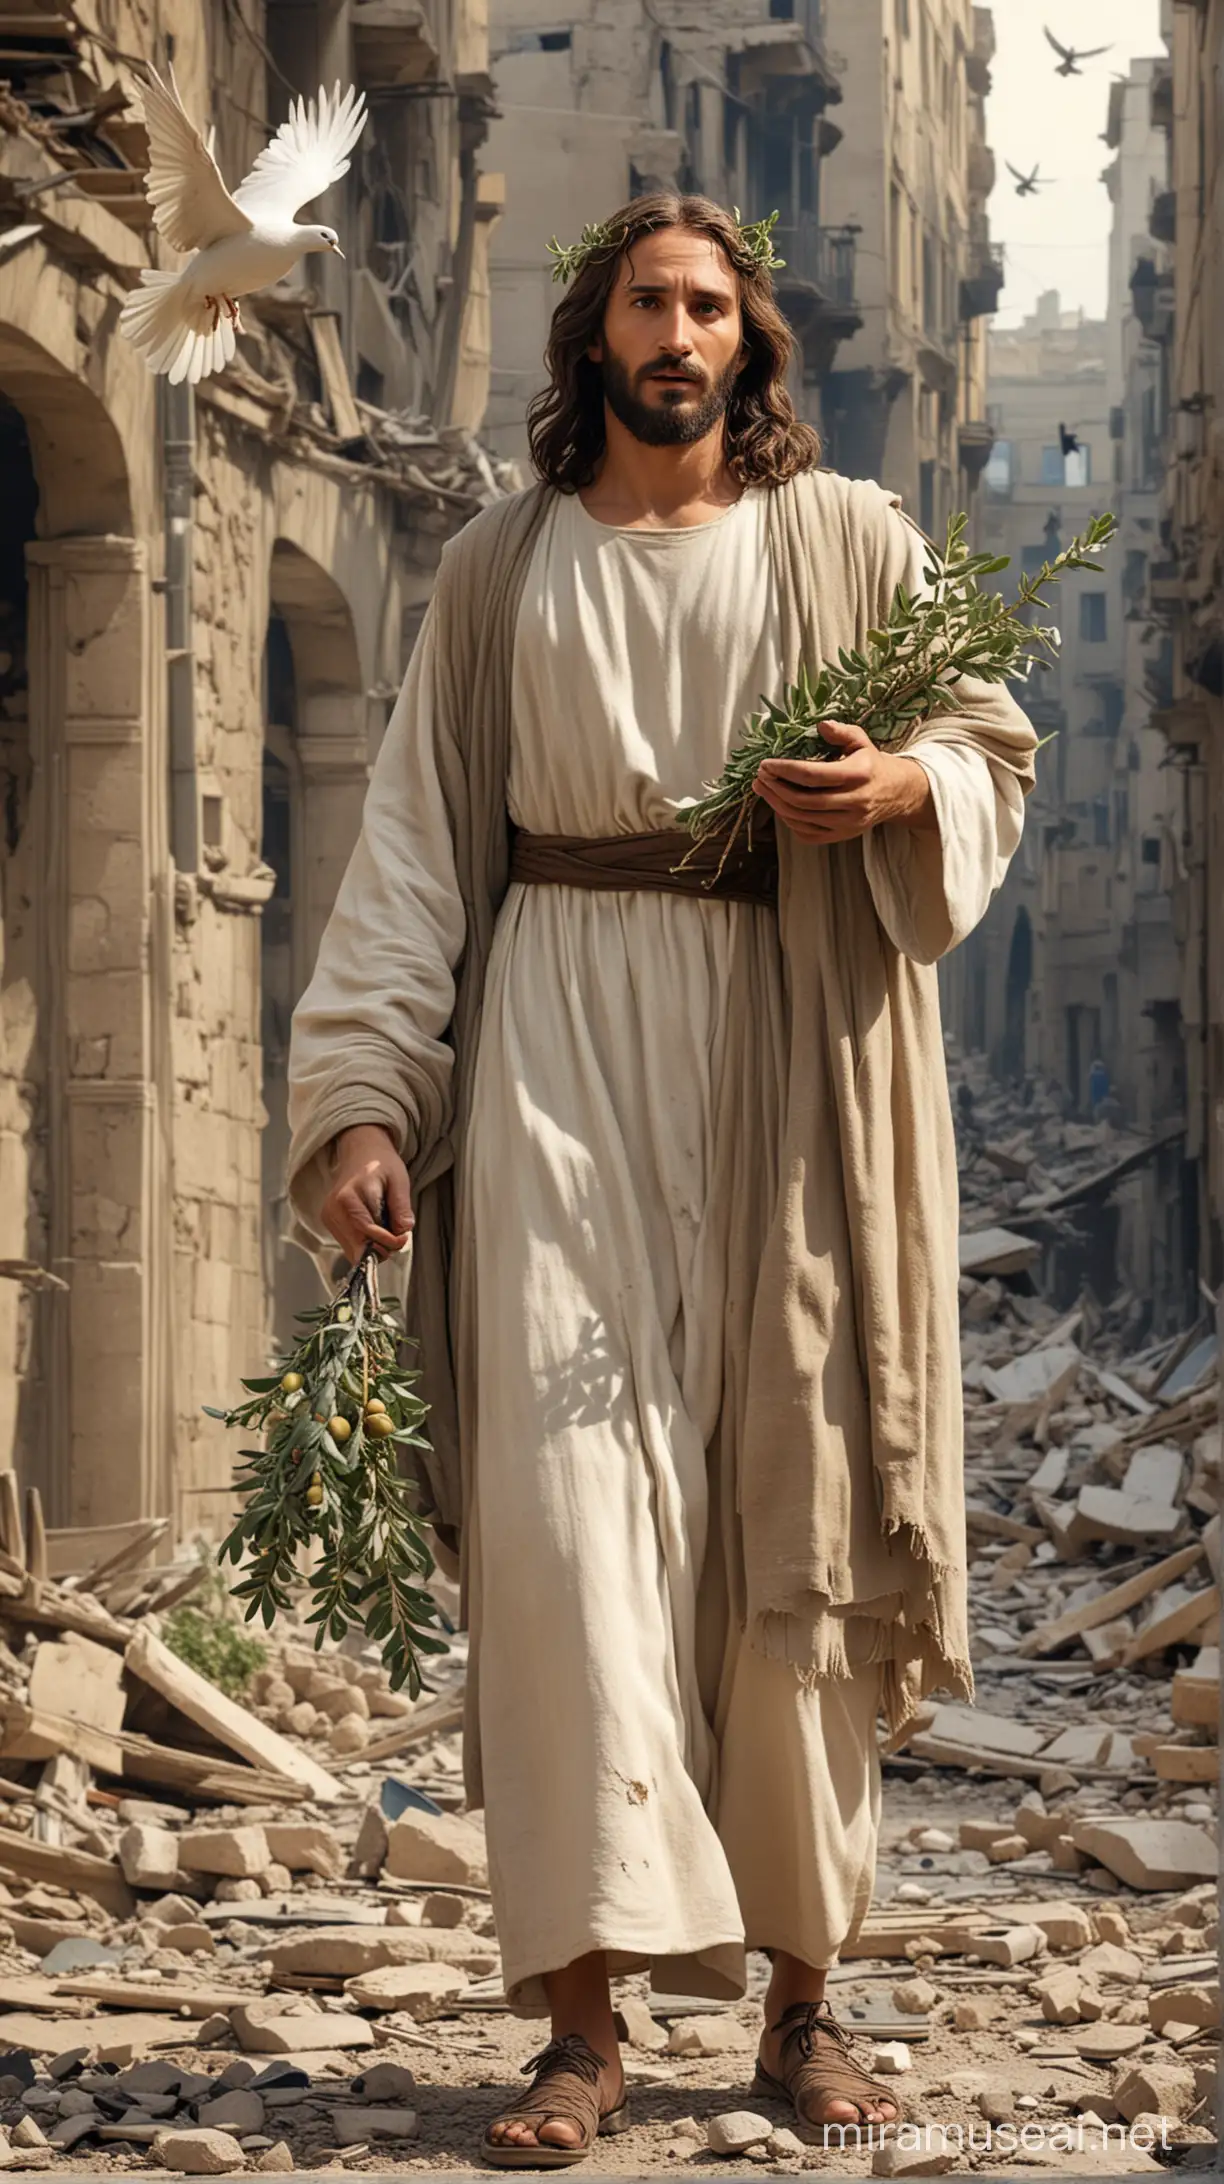 Gesù con in mano una colomba e un ramoscello di olivo, una città distrutta dalle bombe che cadono, aerei che volano